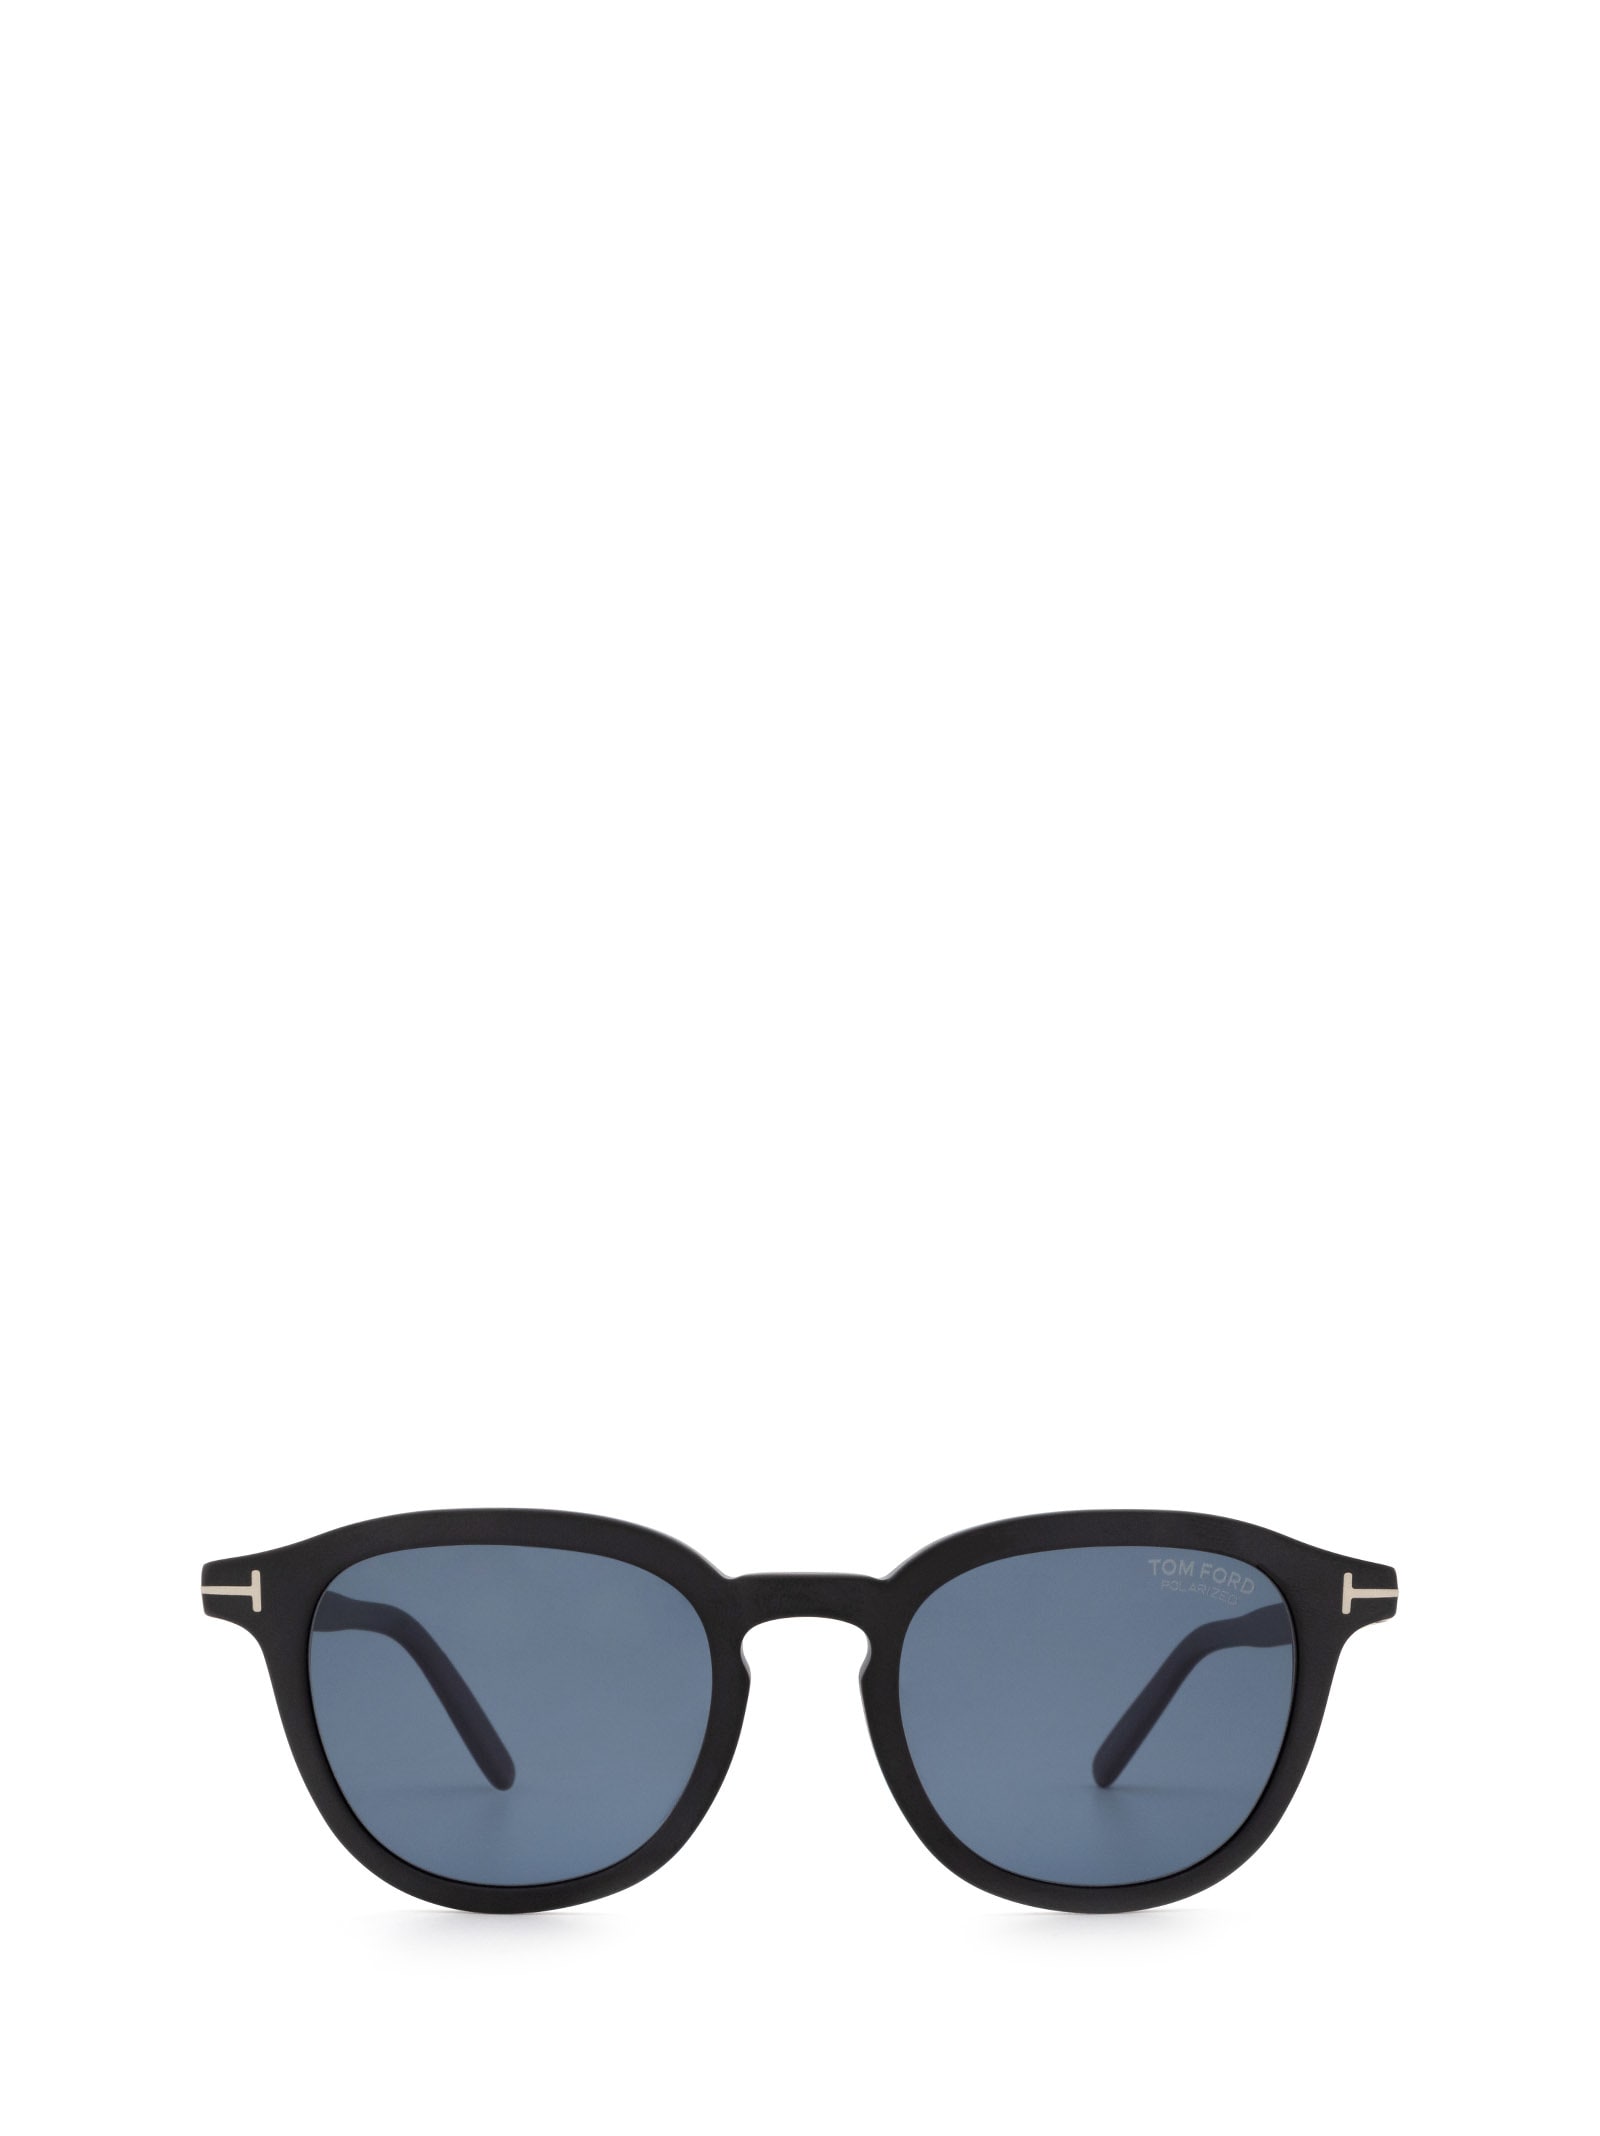 Tom Ford Tom Ford Ft0816 Matte Black Sunglasses